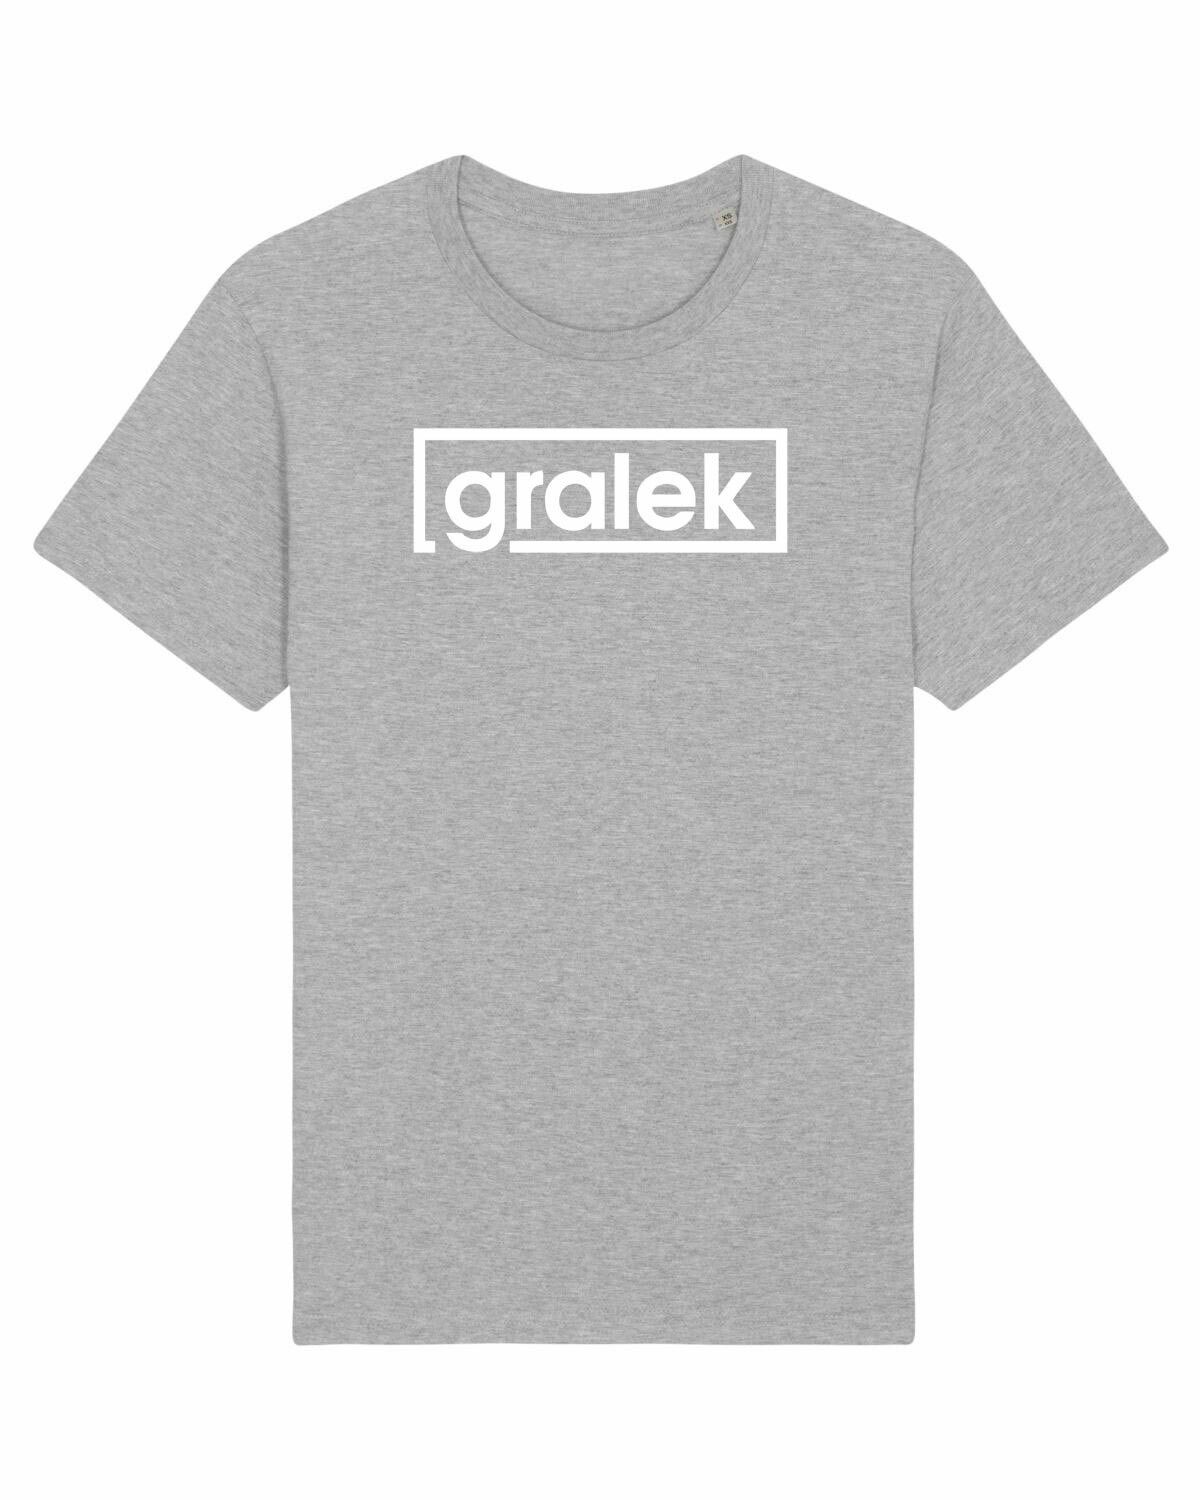 T-shirt Gralek